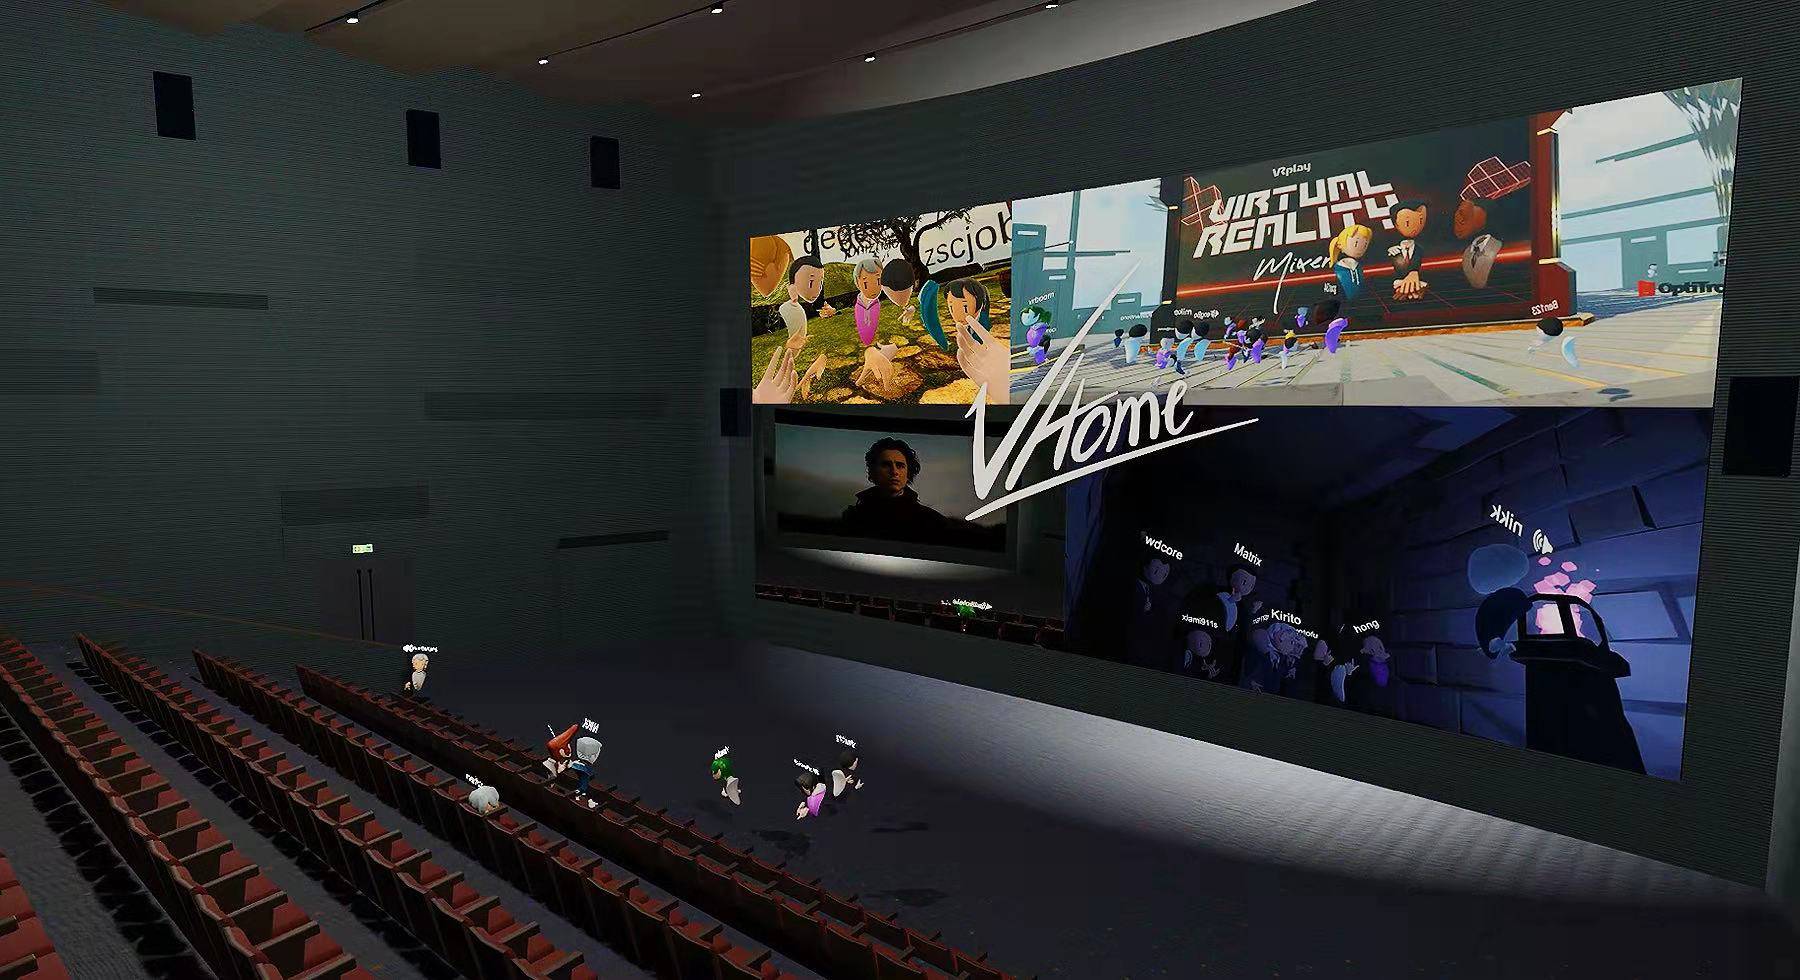 虚拟现实电影院对观众体验的重要性及影响